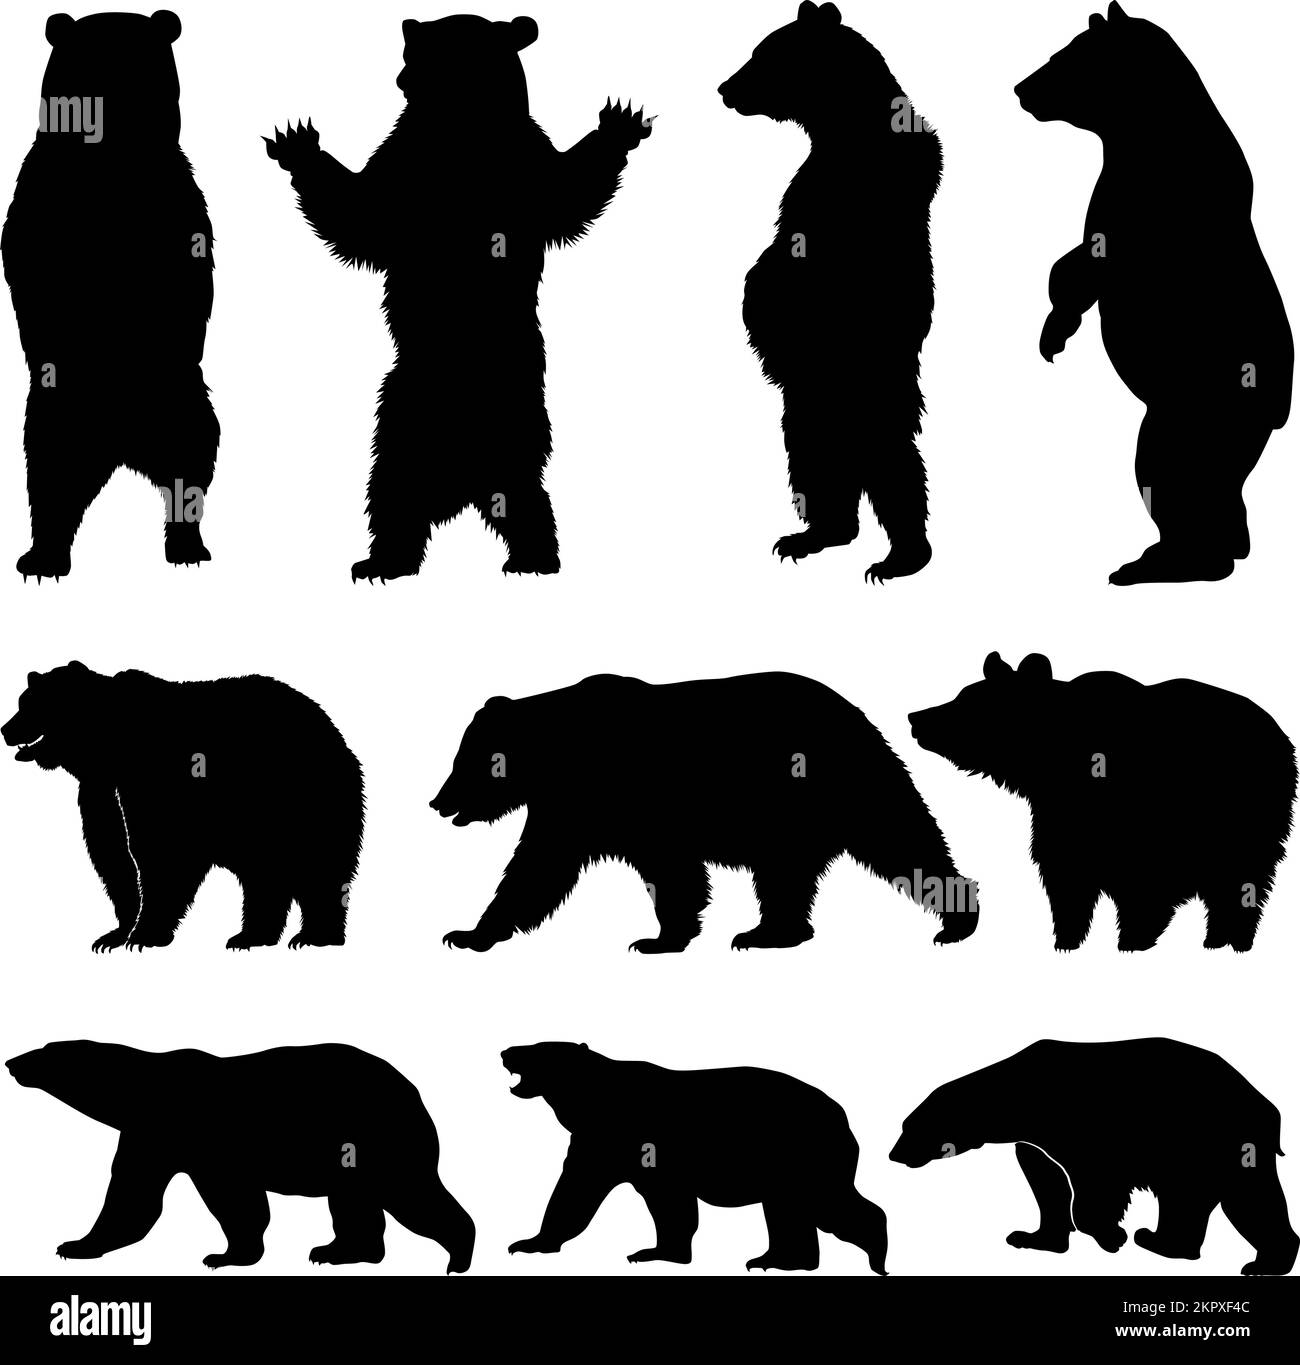 Orsetto vettoriale, varie silhouette orsetti su sfondo bianco, orsetto grizzly marrone e set silhouette orsetti polari Illustrazione Vettoriale